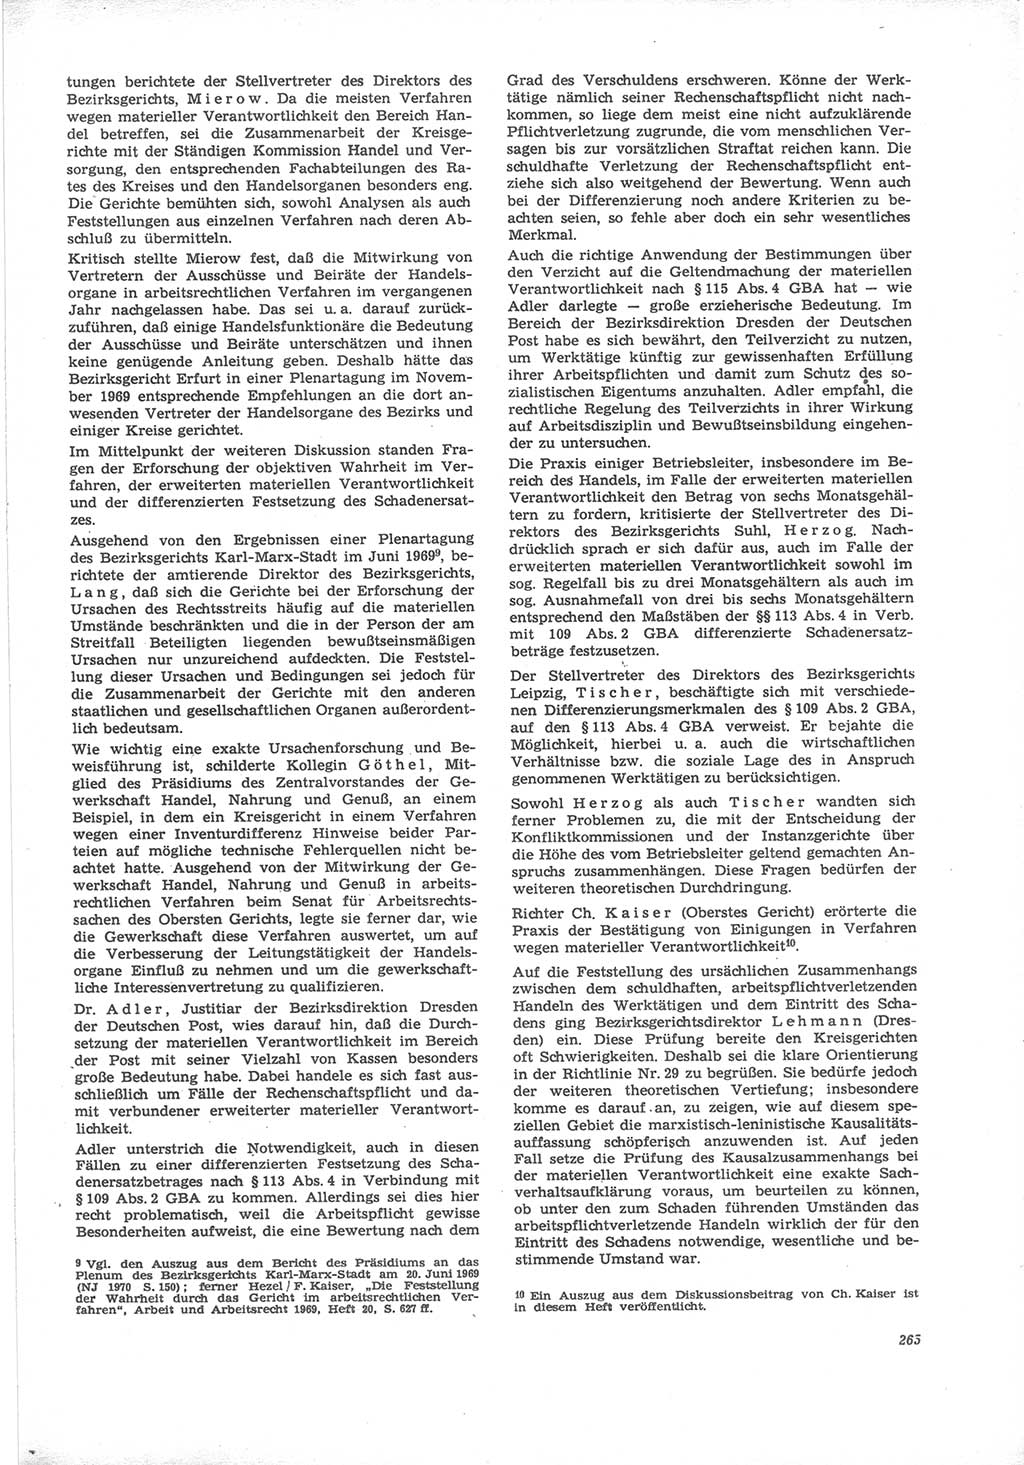 Neue Justiz (NJ), Zeitschrift für Recht und Rechtswissenschaft [Deutsche Demokratische Republik (DDR)], 24. Jahrgang 1970, Seite 265 (NJ DDR 1970, S. 265)